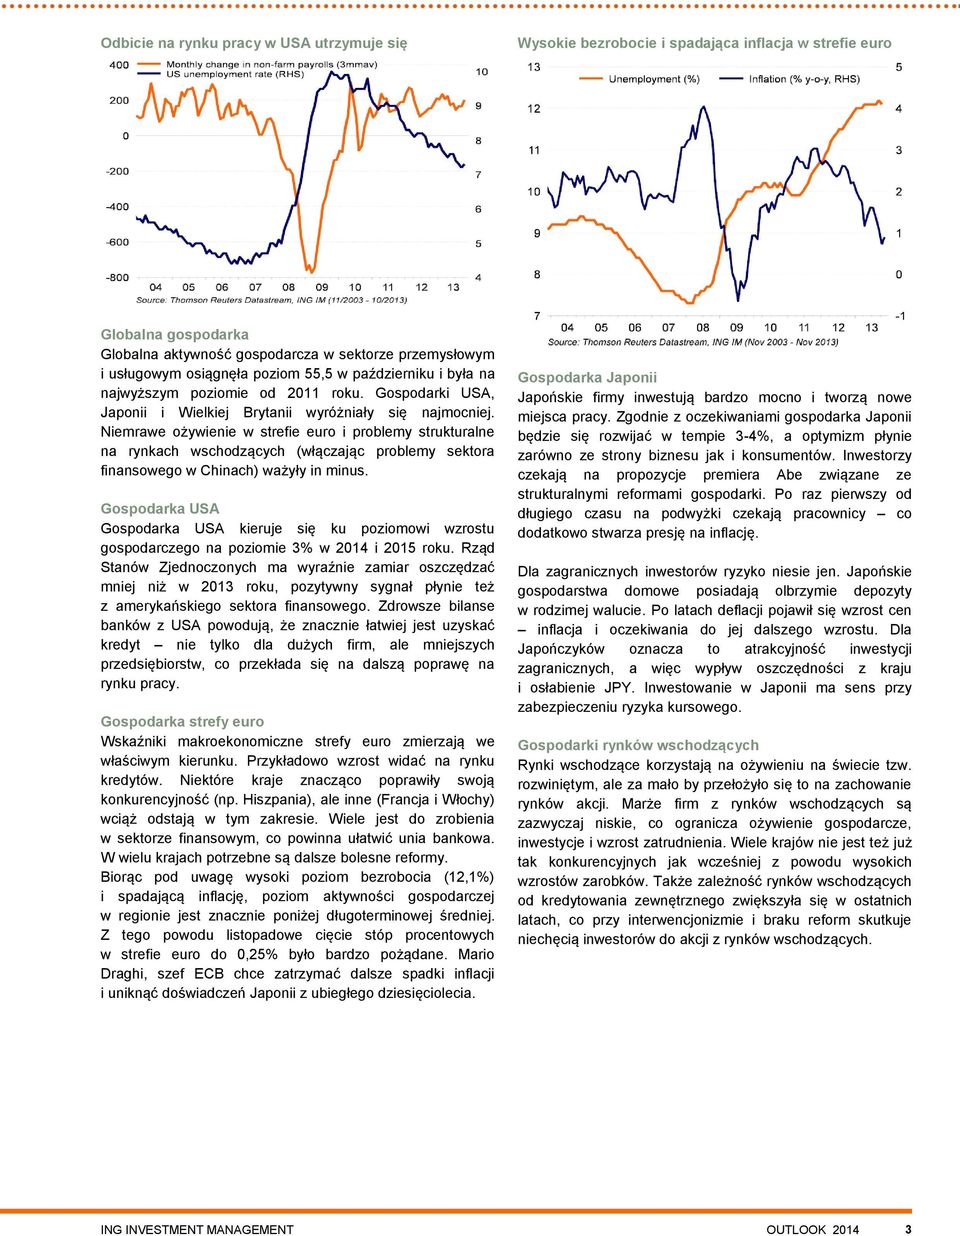 Niemrawe ożywienie w strefie euro i problemy strukturalne na rynkach wschodzących (włączając problemy sektora finansowego w Chinach) ważyły in minus.